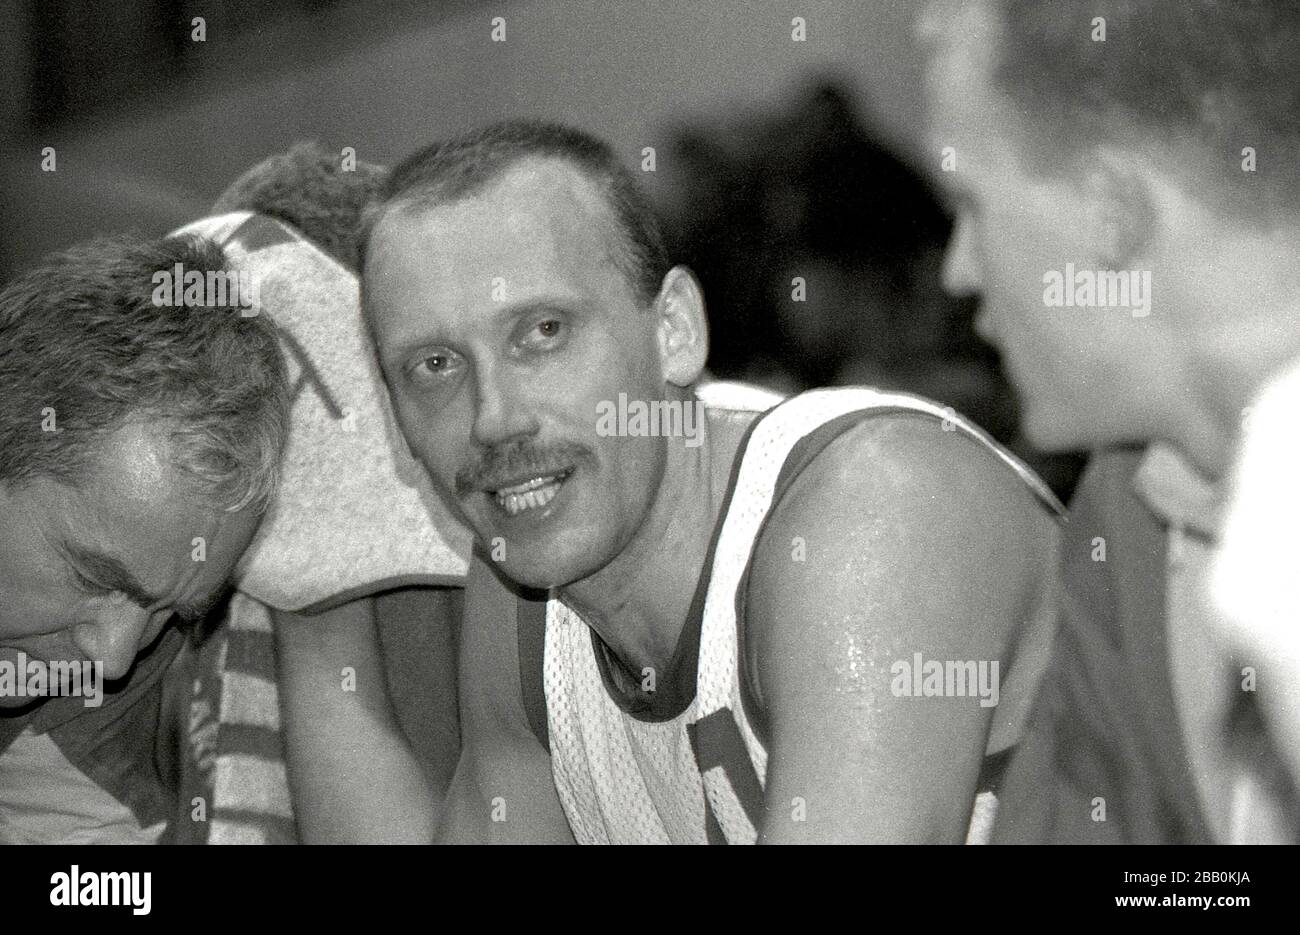 Rimas Kurtinaitis - giocatore di pallacanestro lituano, allenatore, campione olimpico Foto Stock